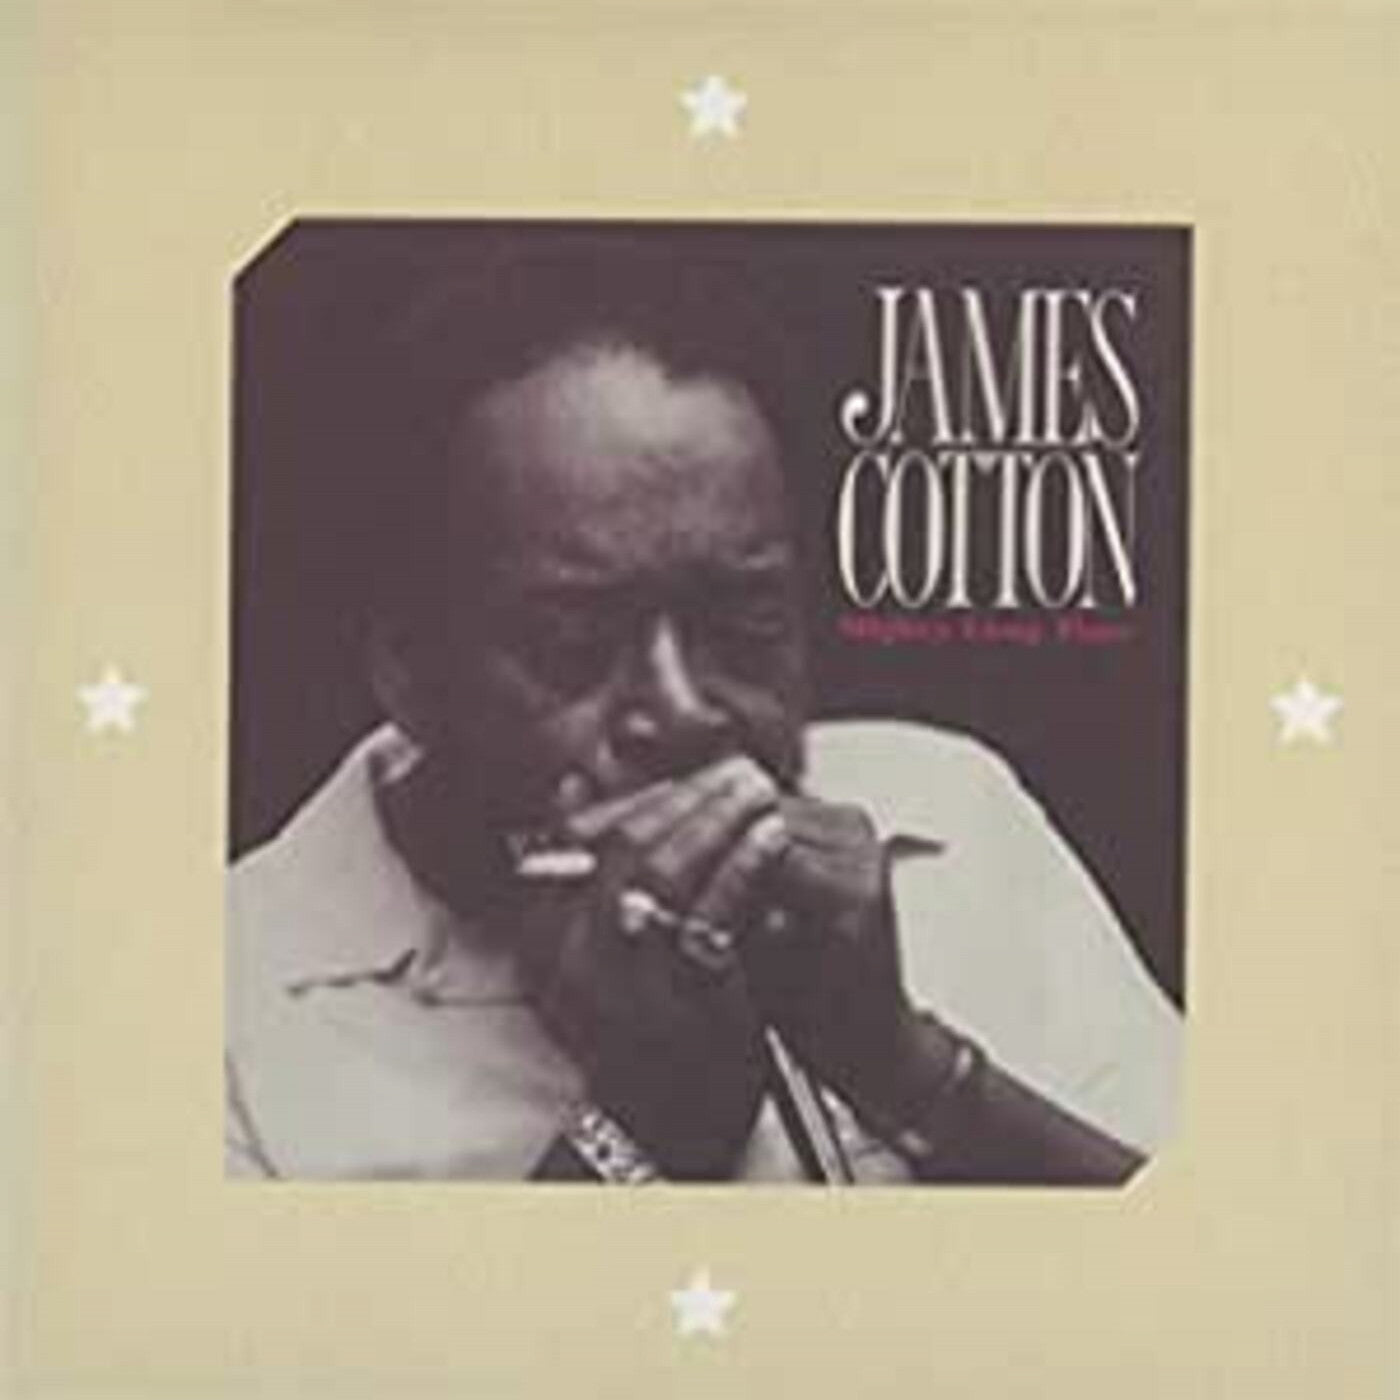 Cotton, James – Mighty Long Time [PURPLE VINYL 2xLP] – New LP